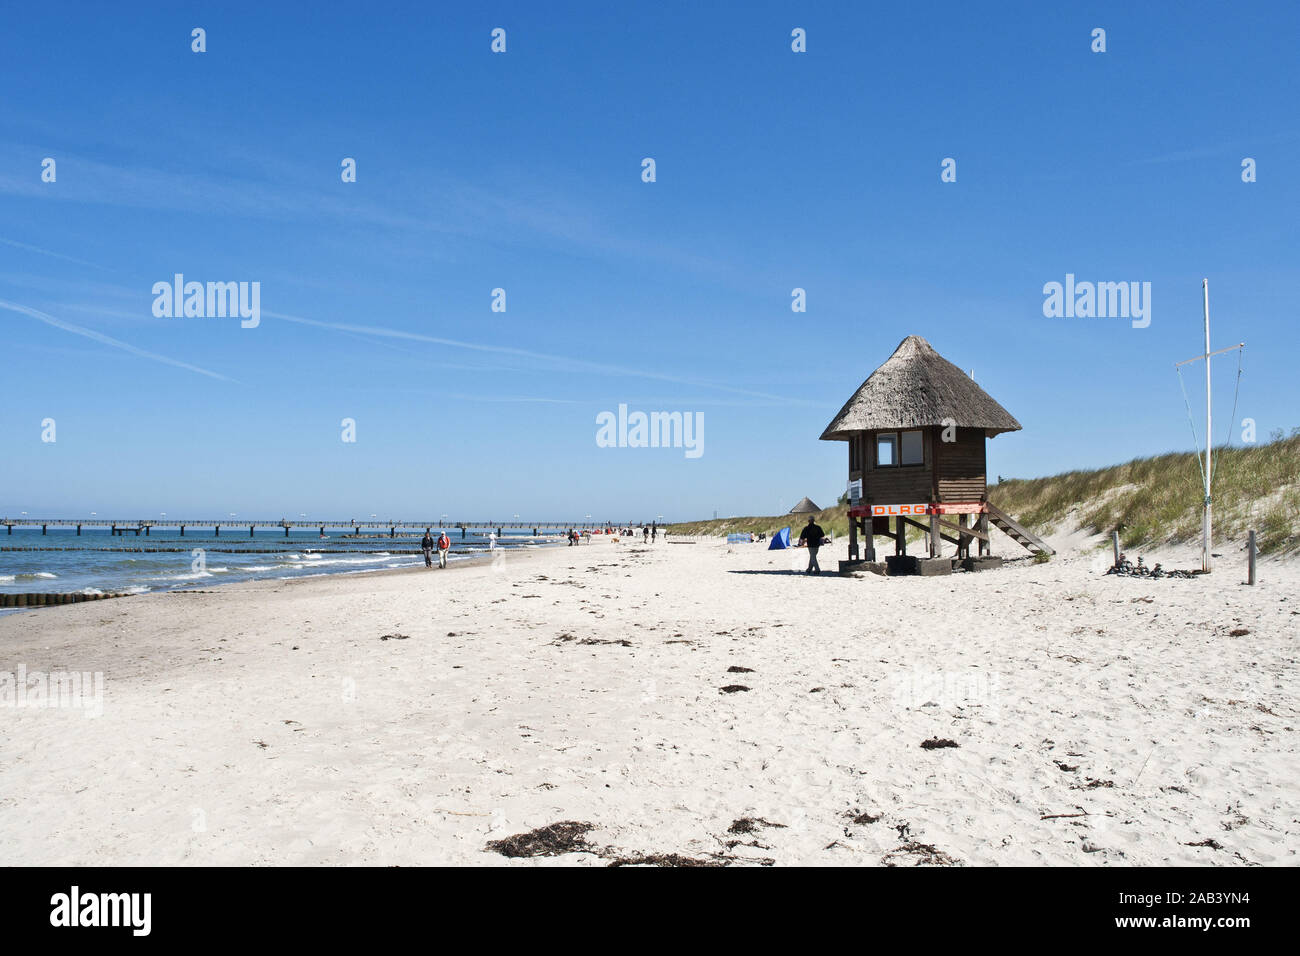 DLRG Haus an einem Strand an der Ostsee |DLRG maison sur une plage de la mer Baltique| Banque D'Images